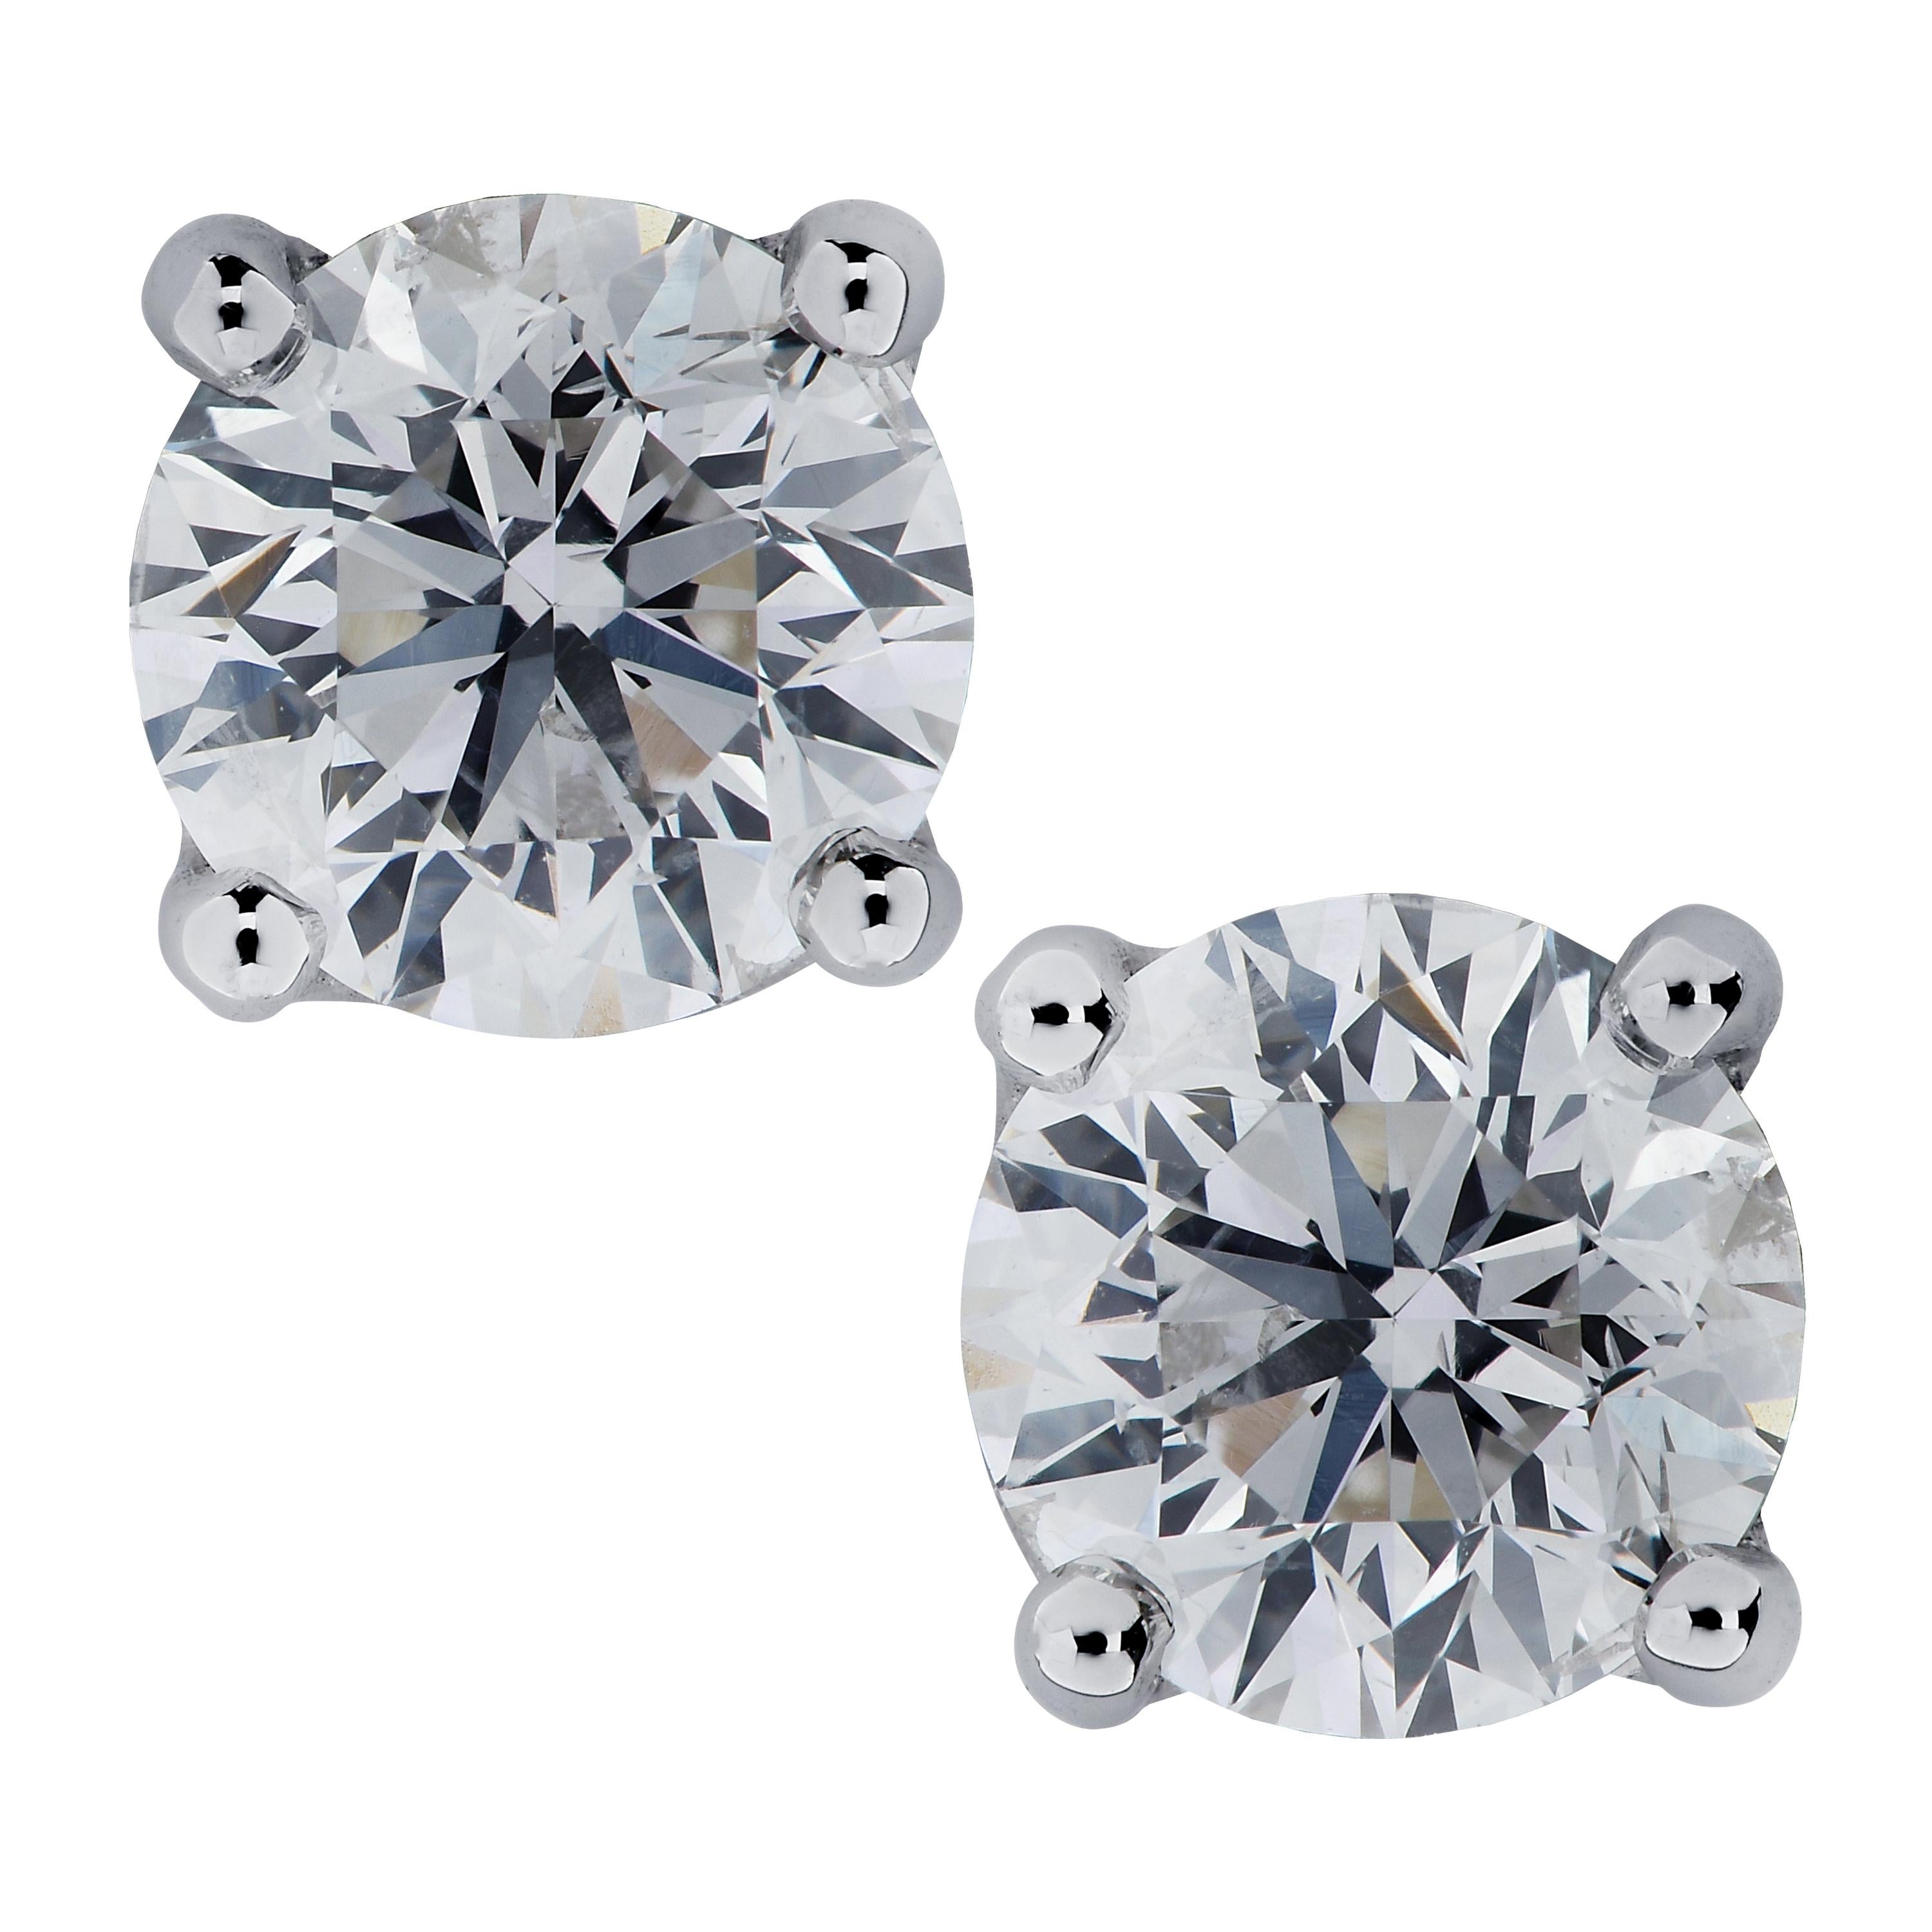 Vivid Diamonds GIA Certified 2.58 Carat Diamond Solitaire Studs